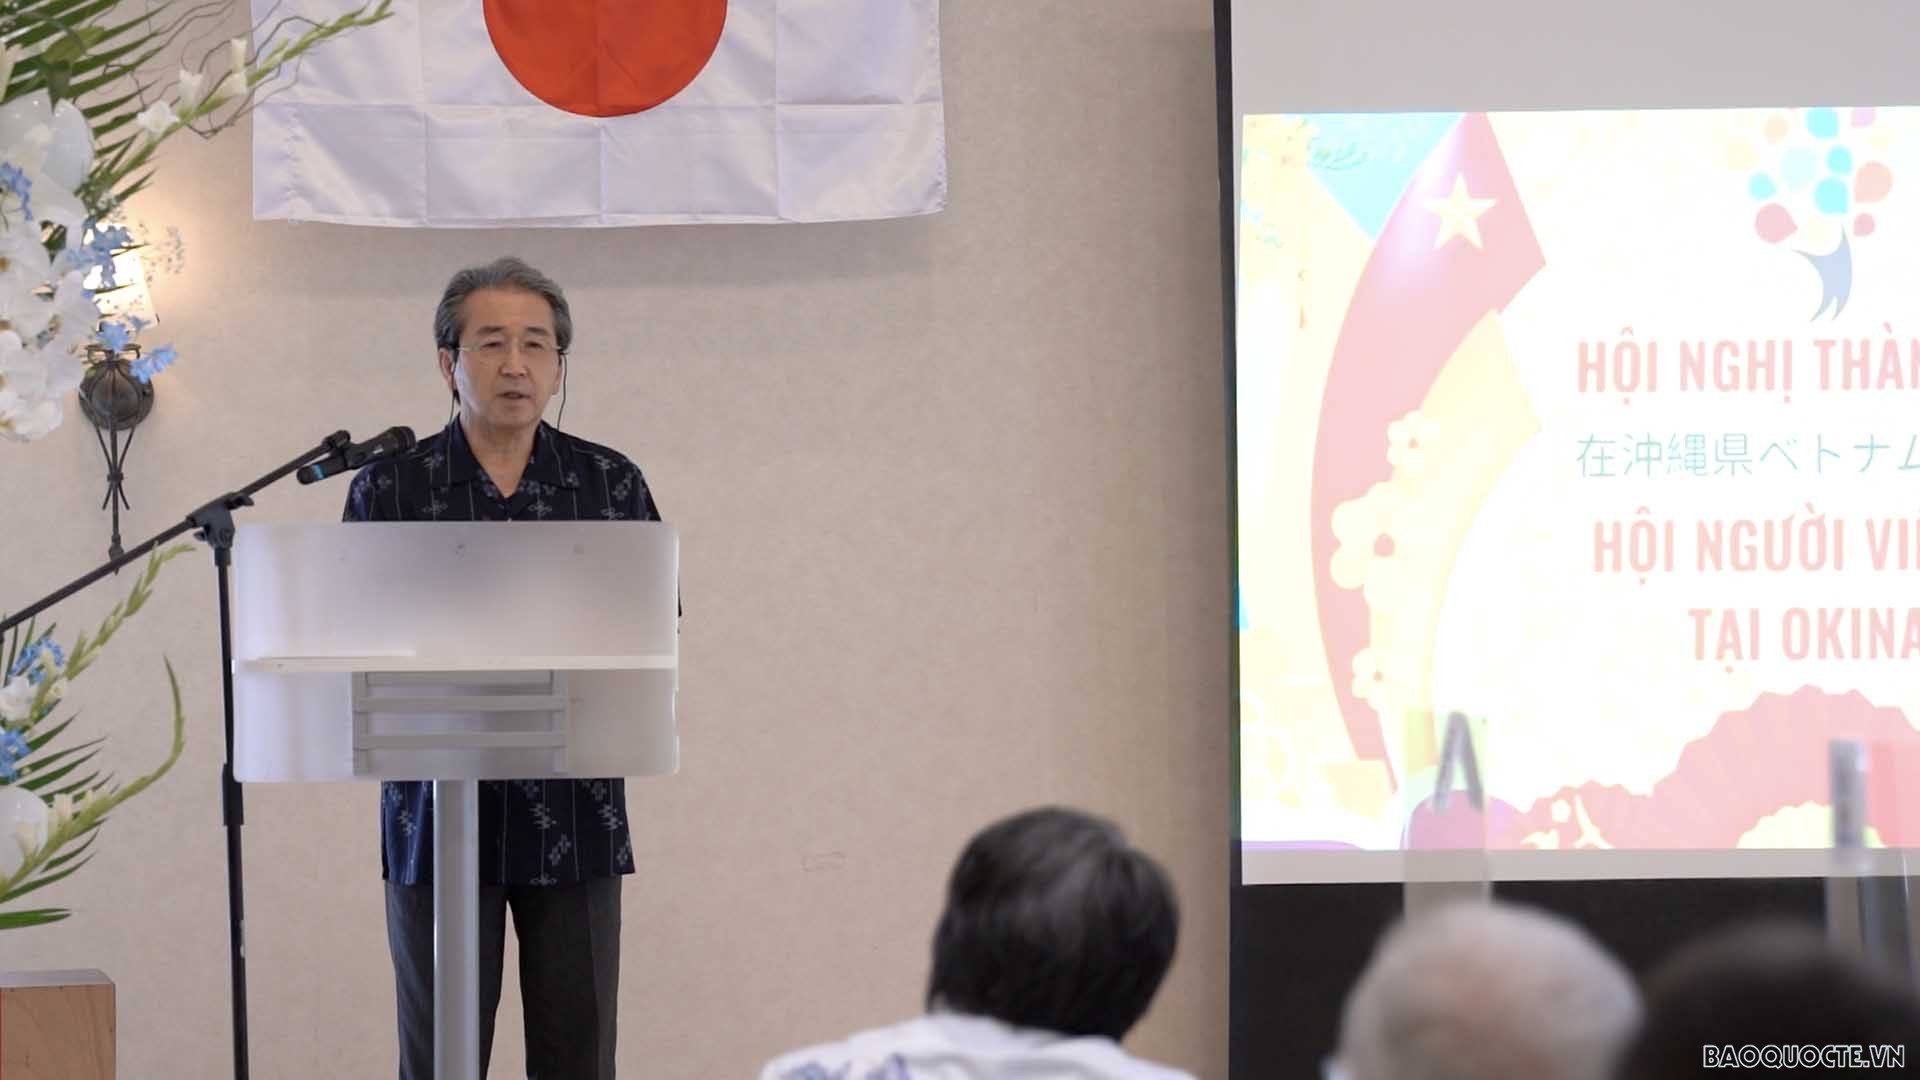 Chính thức thành lập Hội người Việt Nam tại Okinawa, Nhật Bản